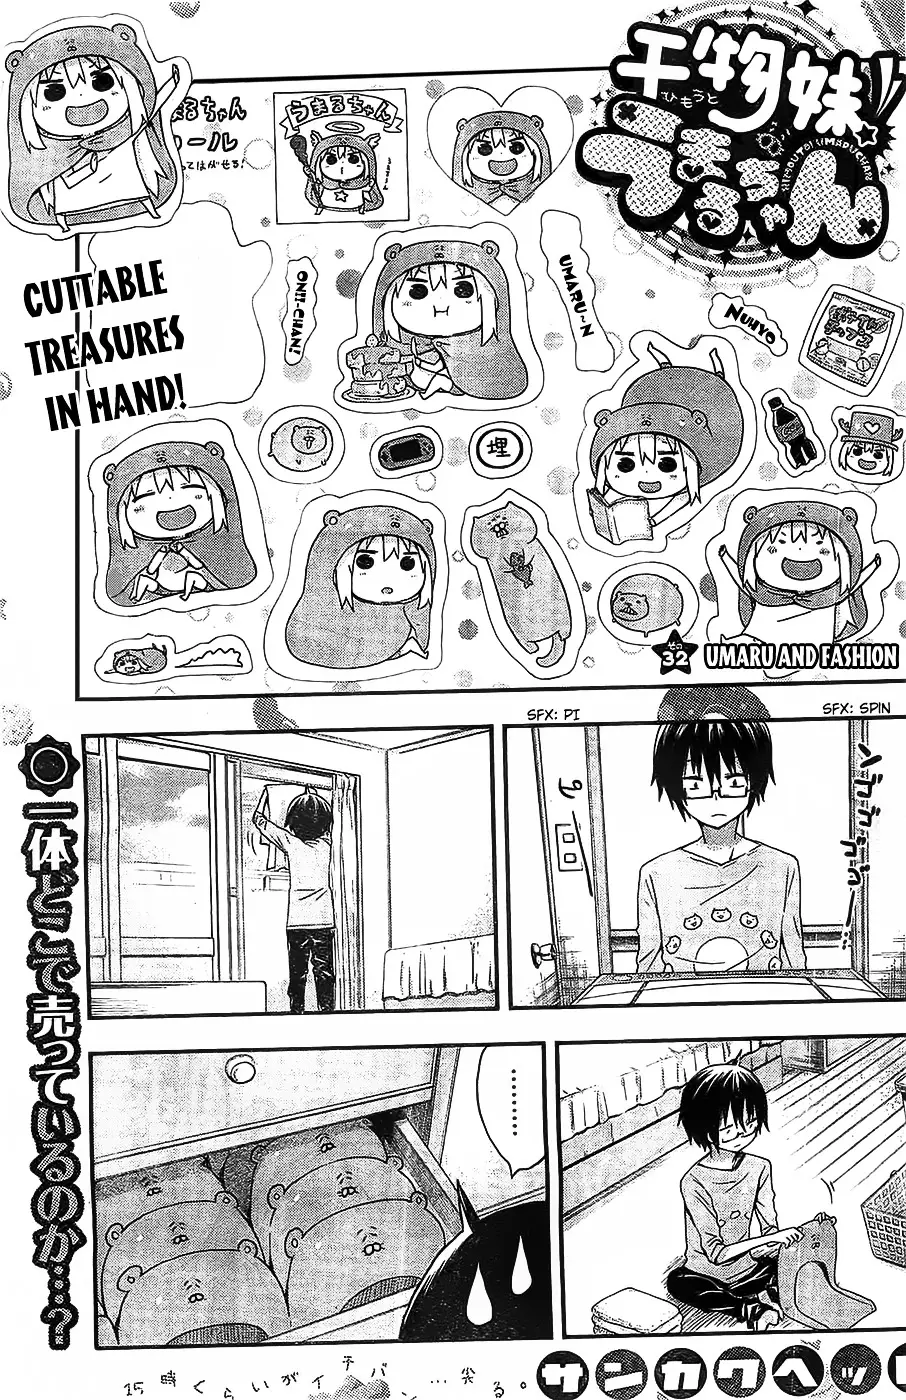 Himouto! Umaru-Chan - 32 page 1